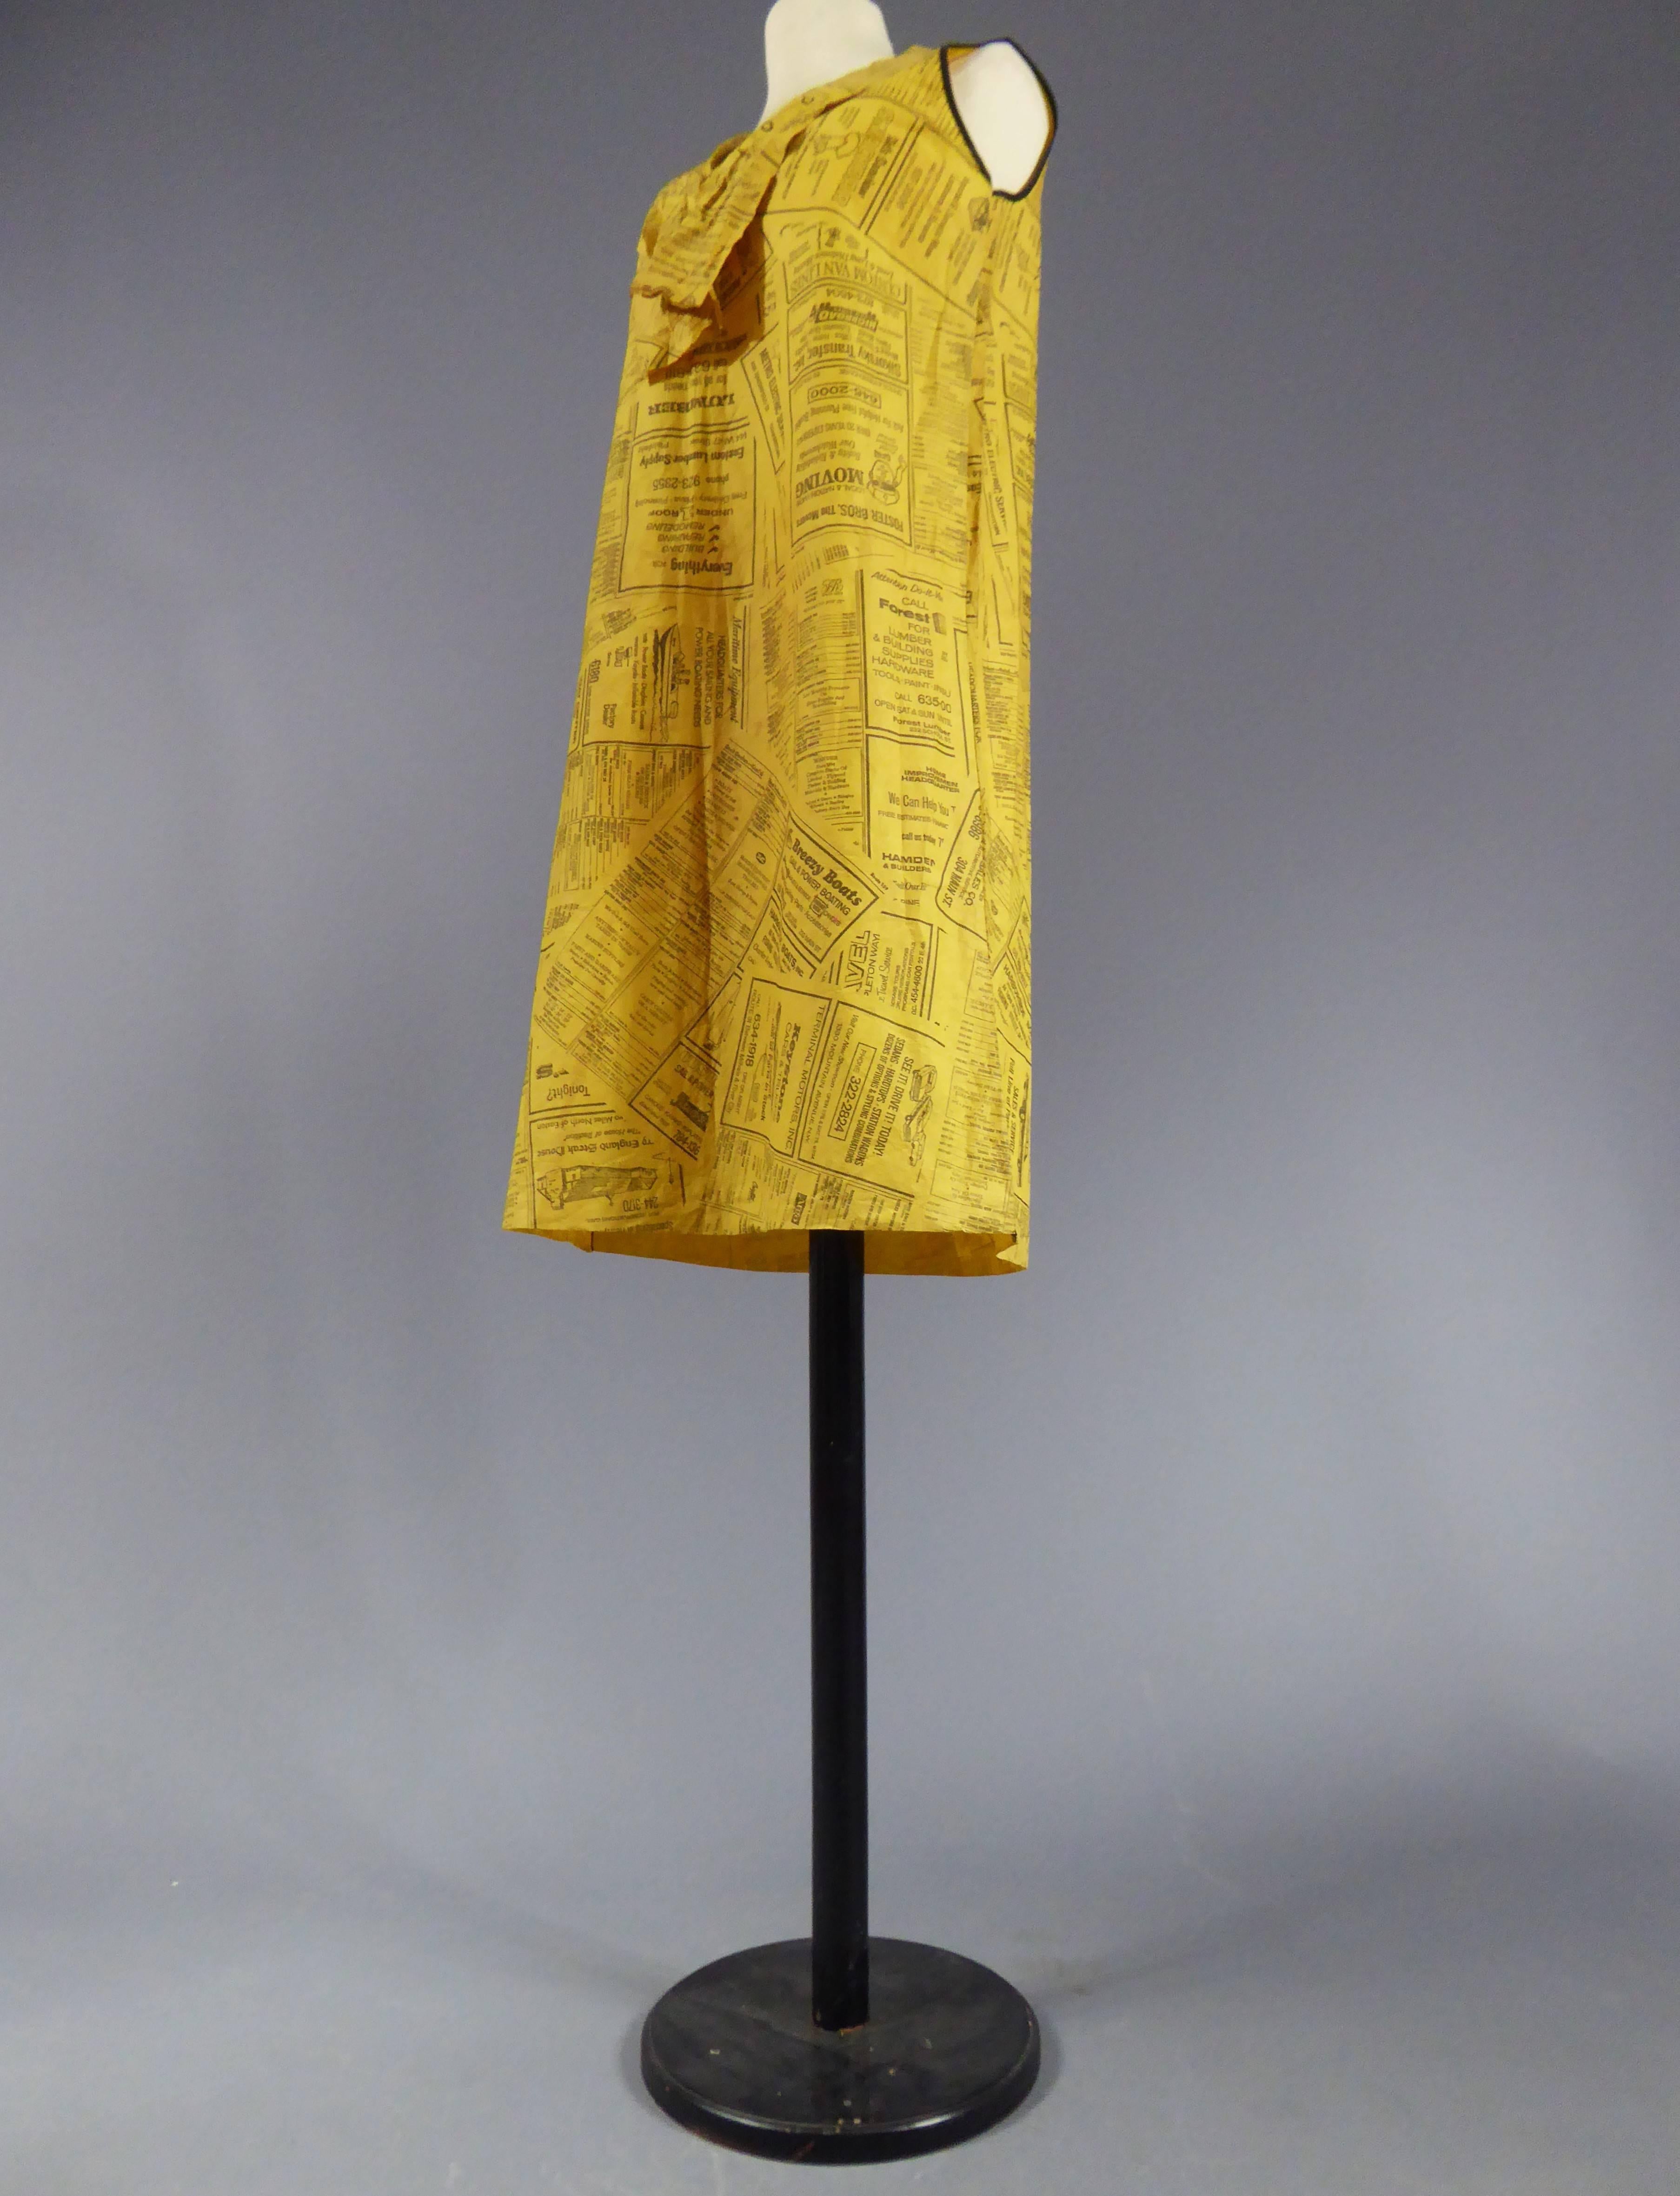 Circa 1965

United States

Mini-dress in non-woven 